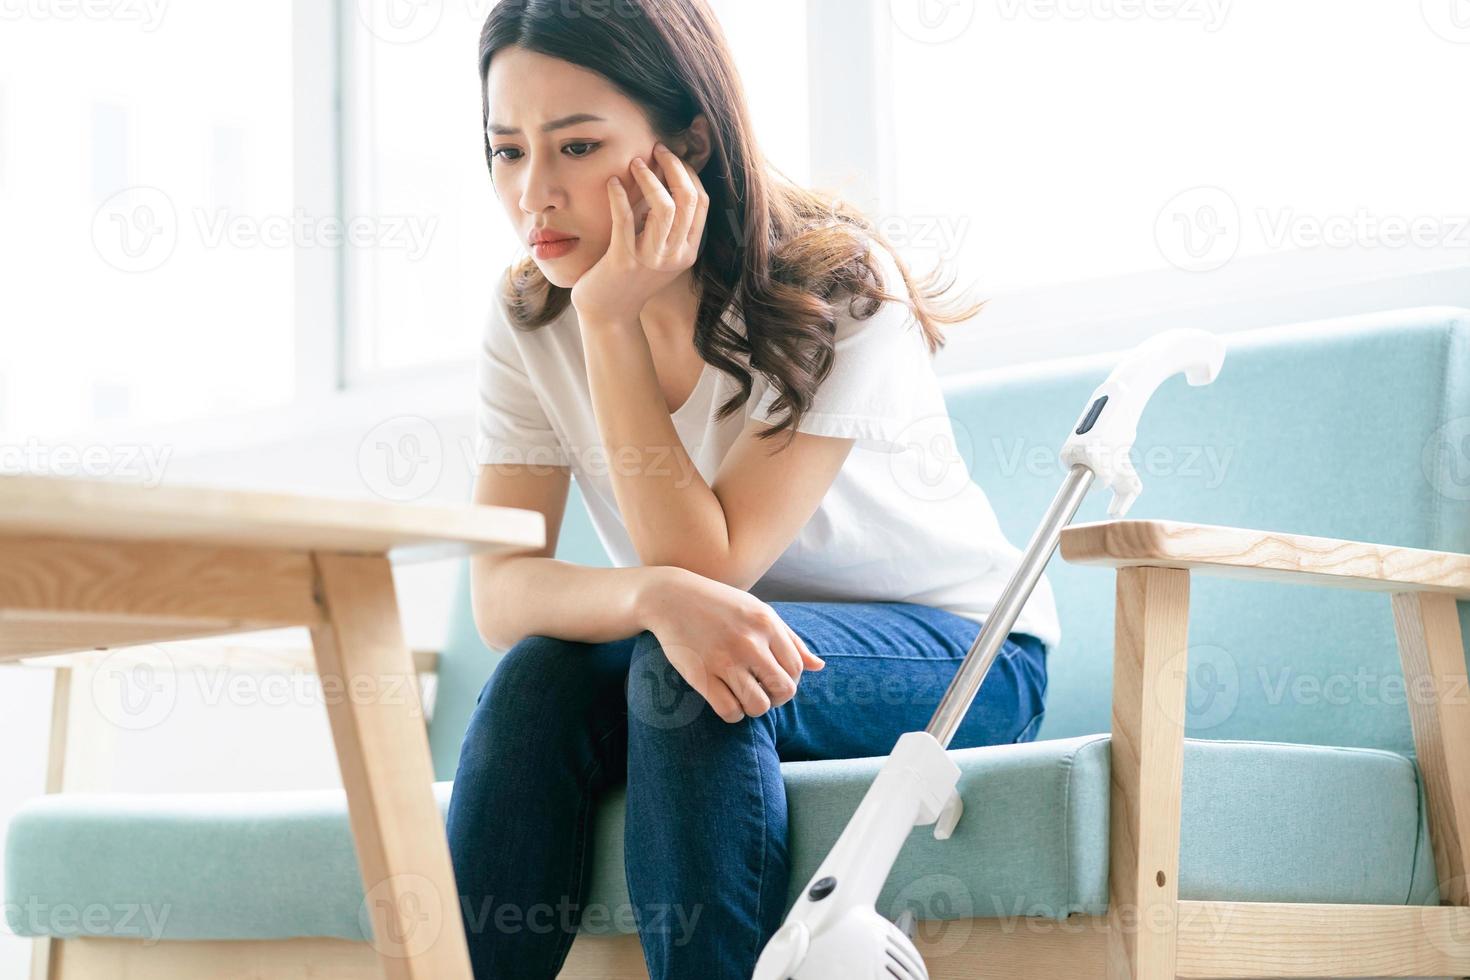 femme asiatique assise sur une chaise avec une expression fatiguée pendant le nettoyage de la maison photo